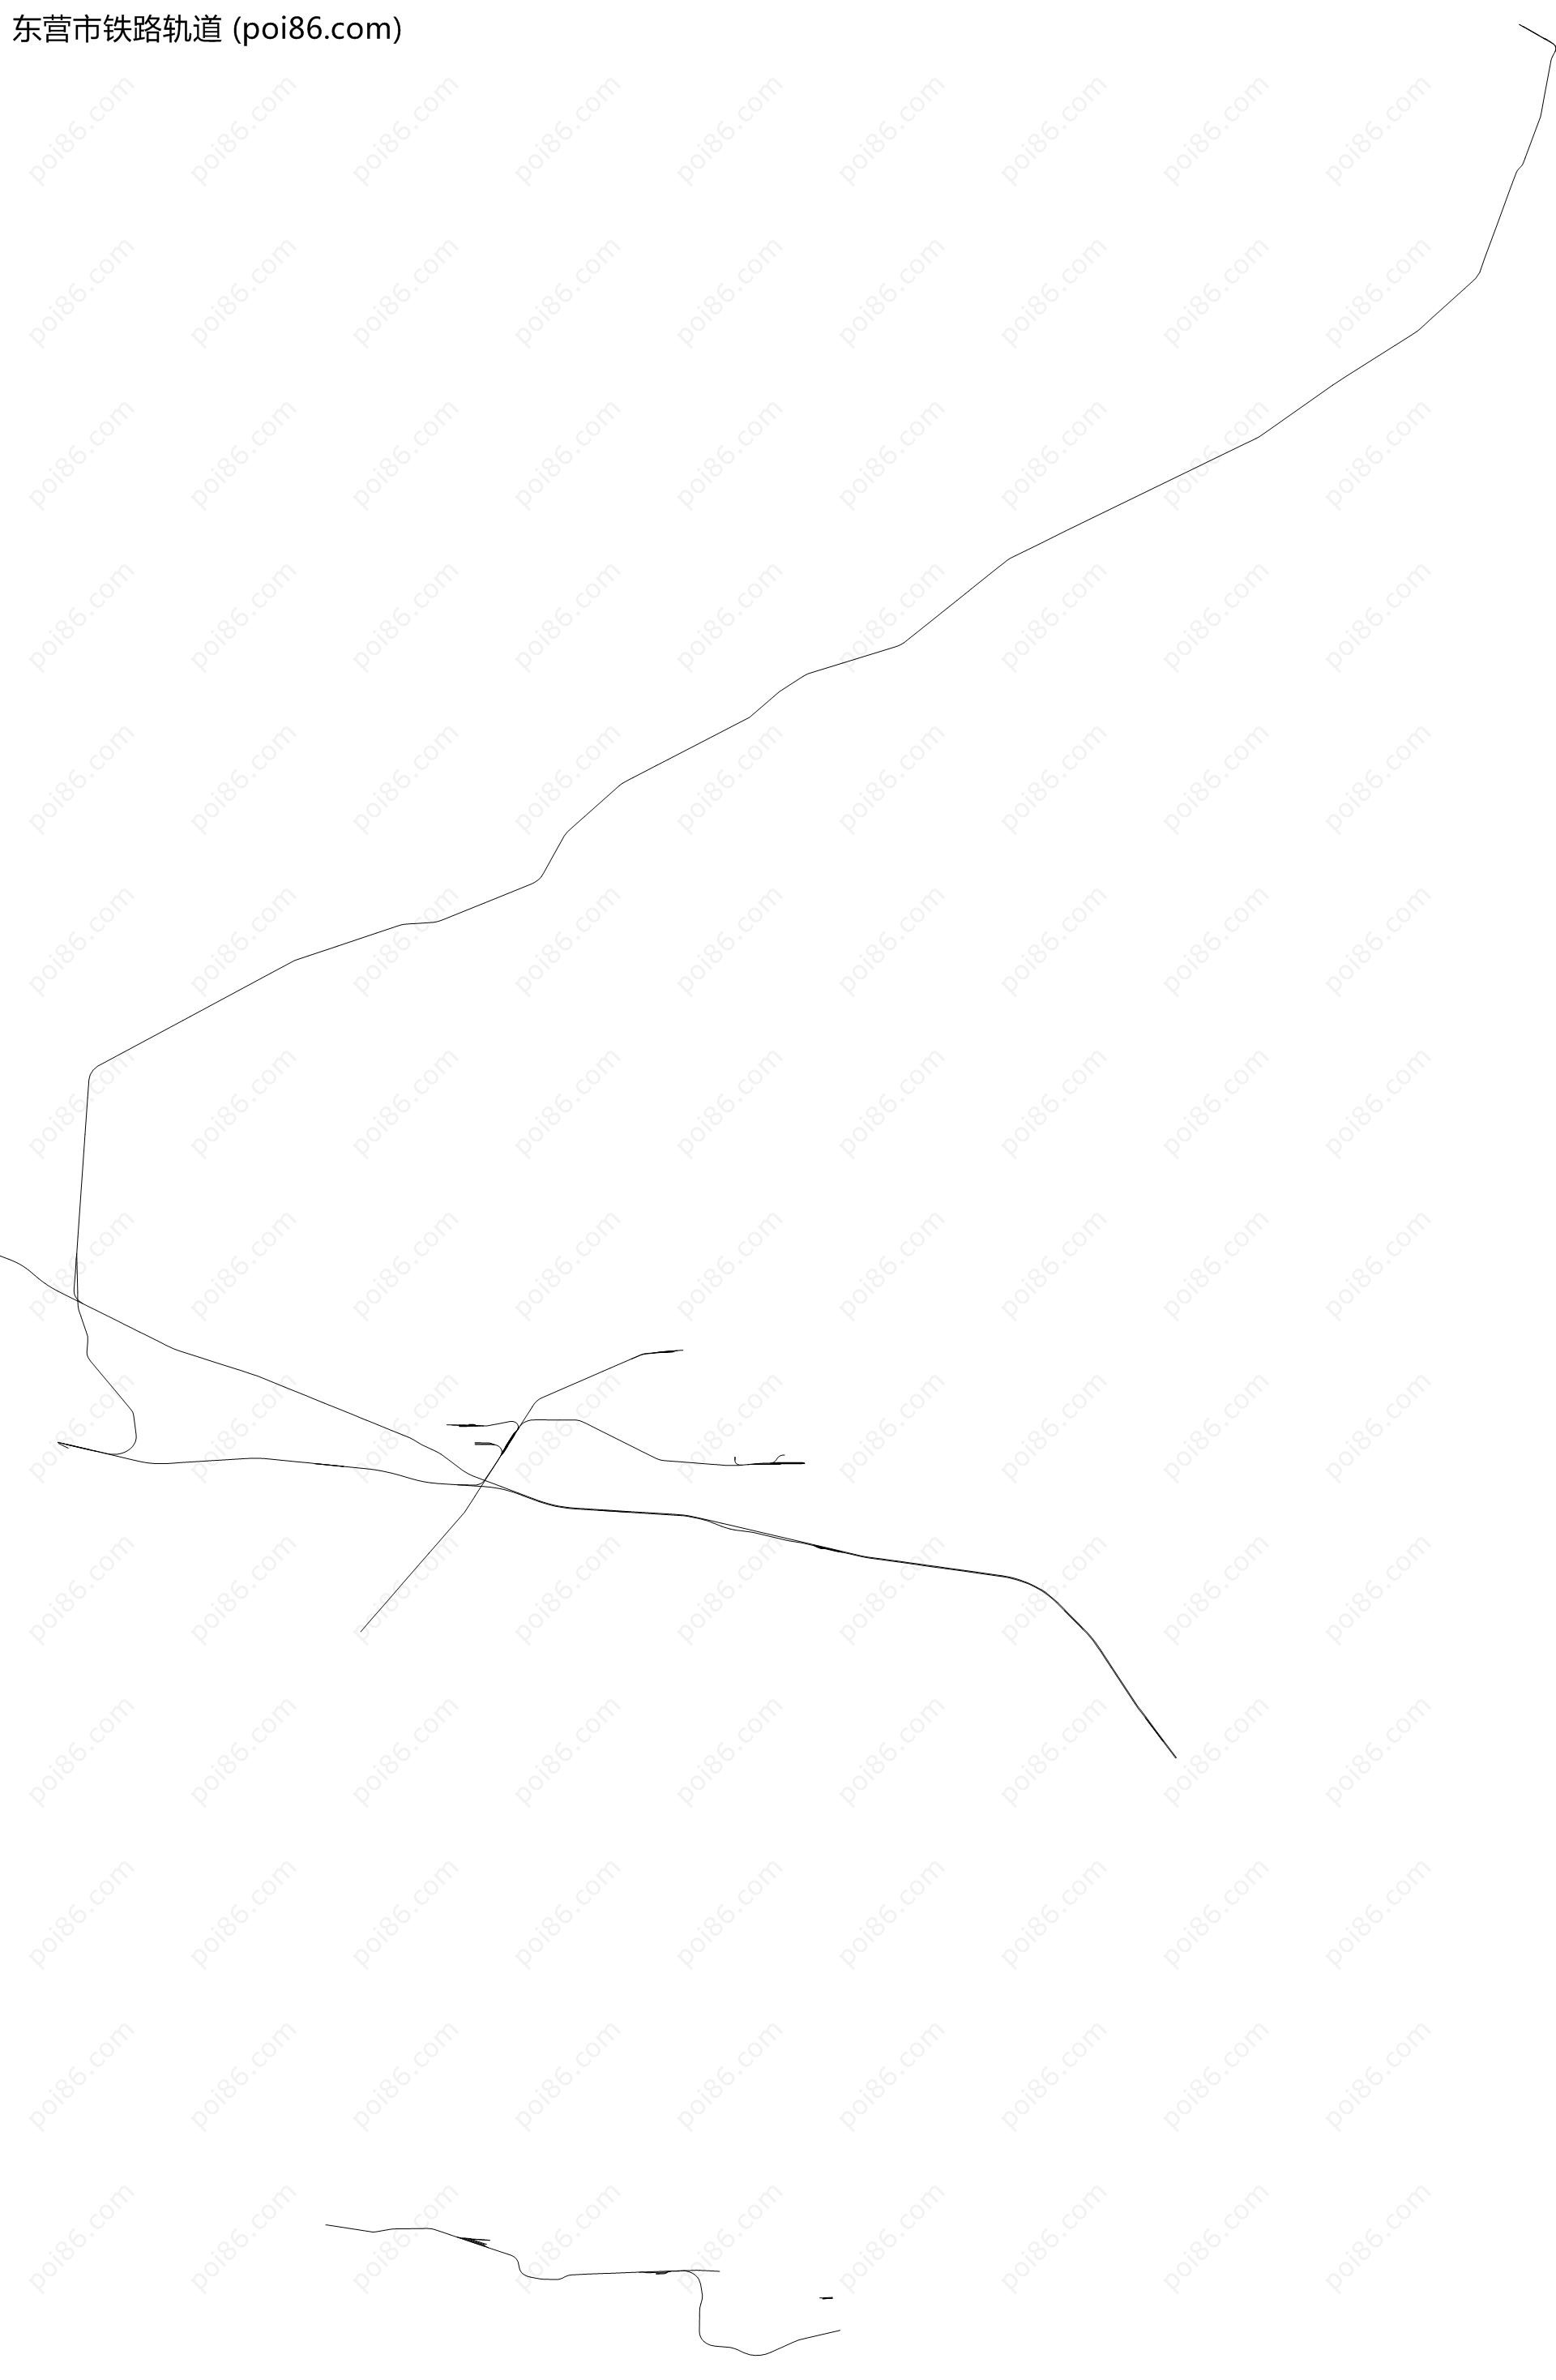 东营市铁路轨道地图